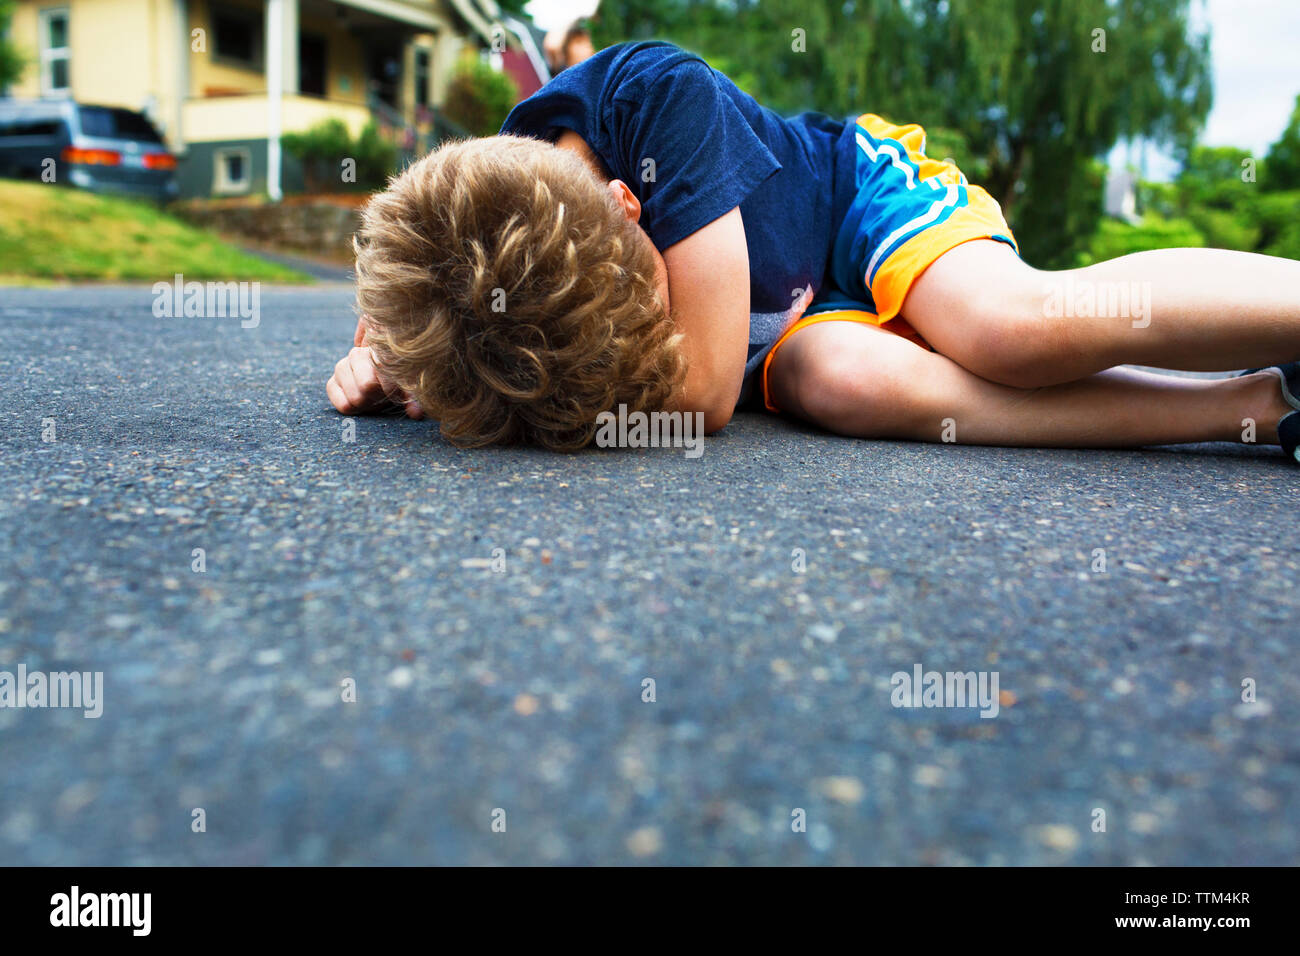 Traurige junge liegend auf der Straße Stockfoto